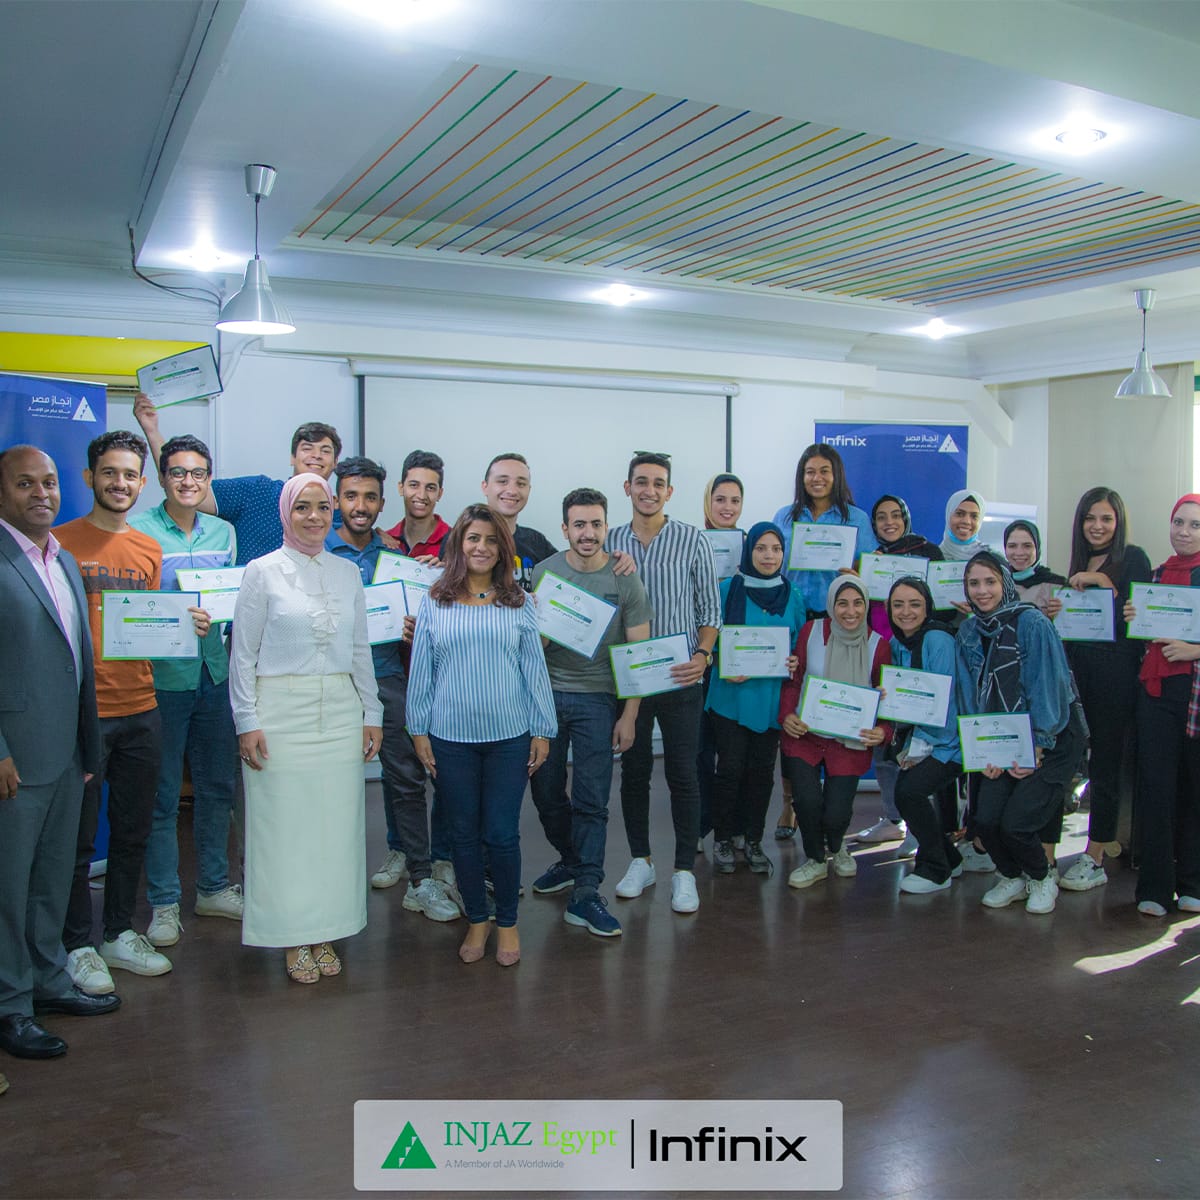 إنفينكس توقع اتفاقية تعاون مع إنجاز مصر لتمكين الشباب المصري